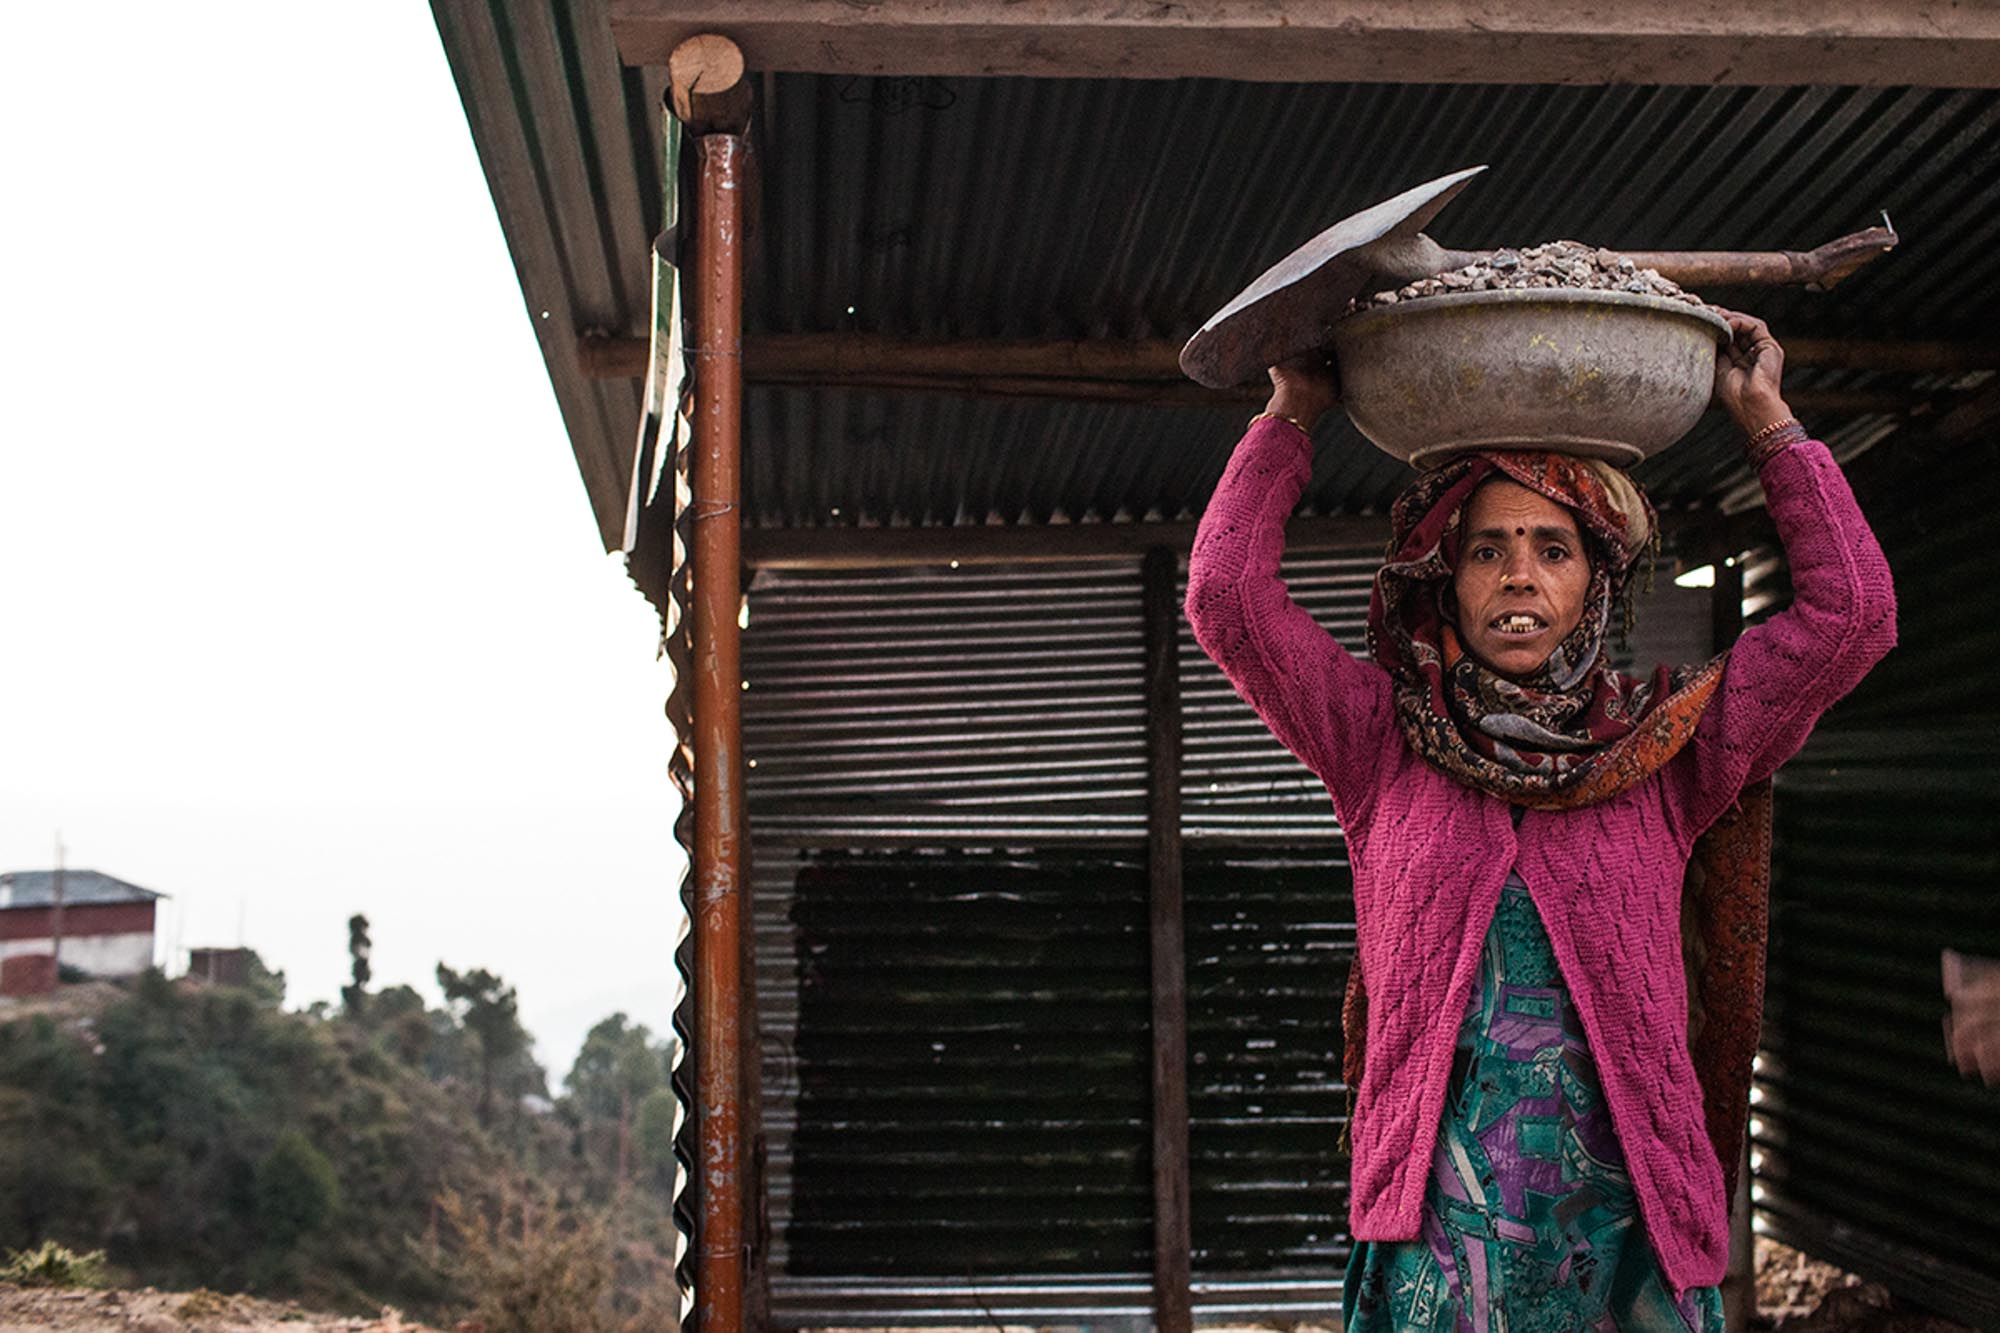 Ινδή εργάτρια στα Ιμαλάια. Η θηλυκή ομορφιά της αρχέγονης πάλης για οικογενειακή επιβίωση.